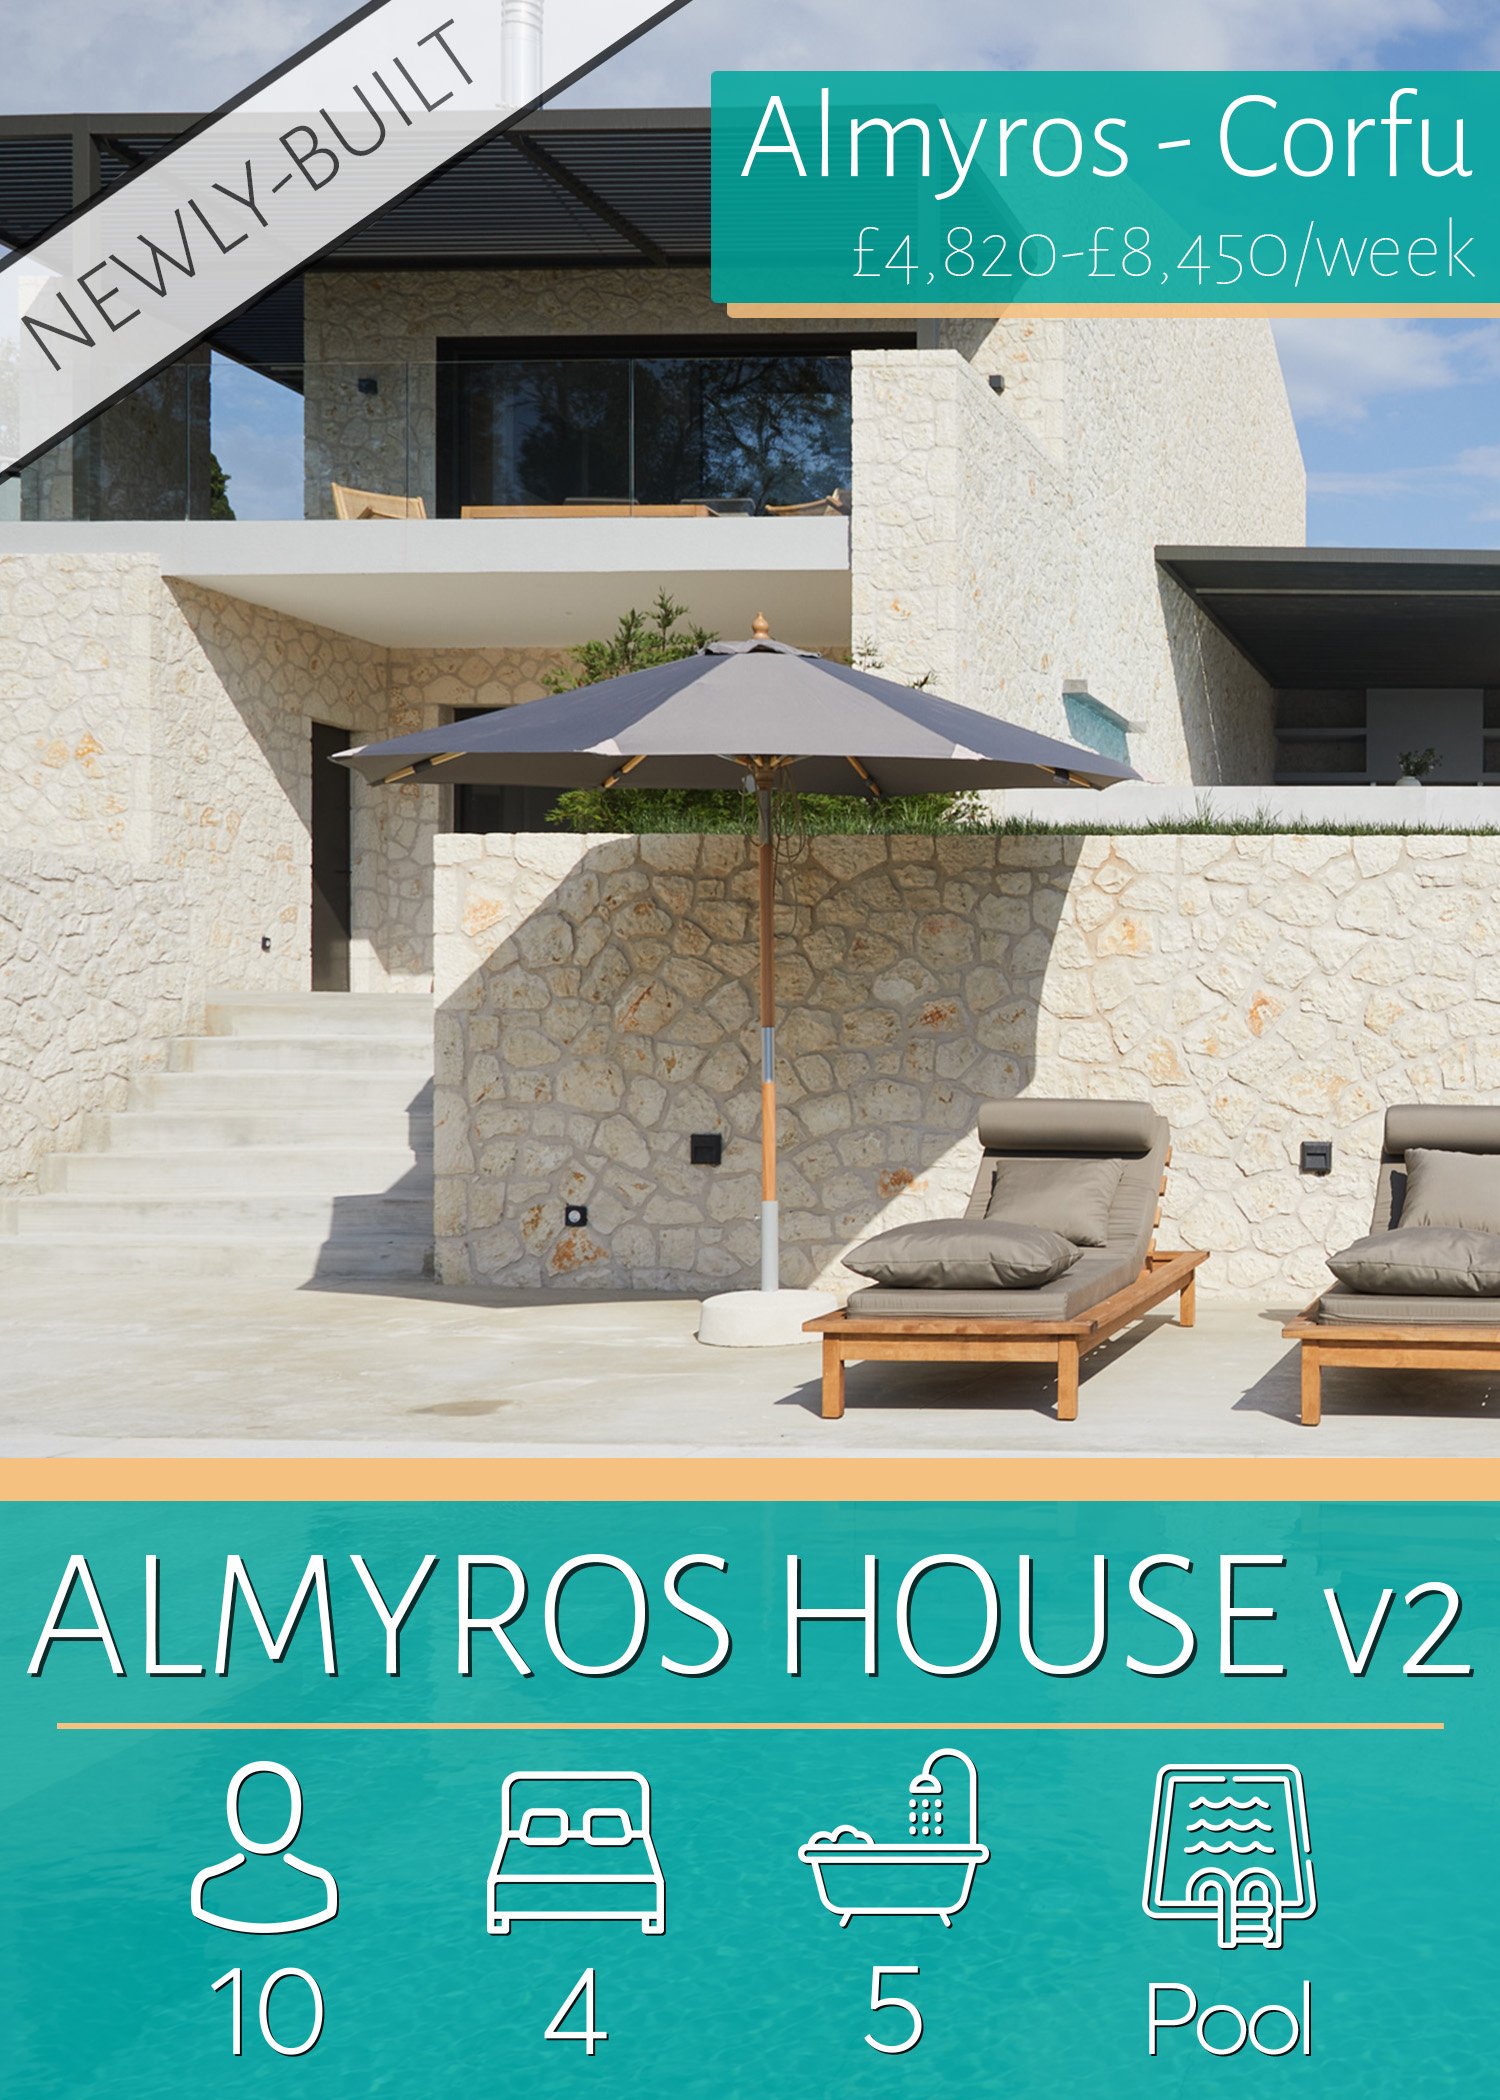 OVR_Almyros_House_V2.jpg